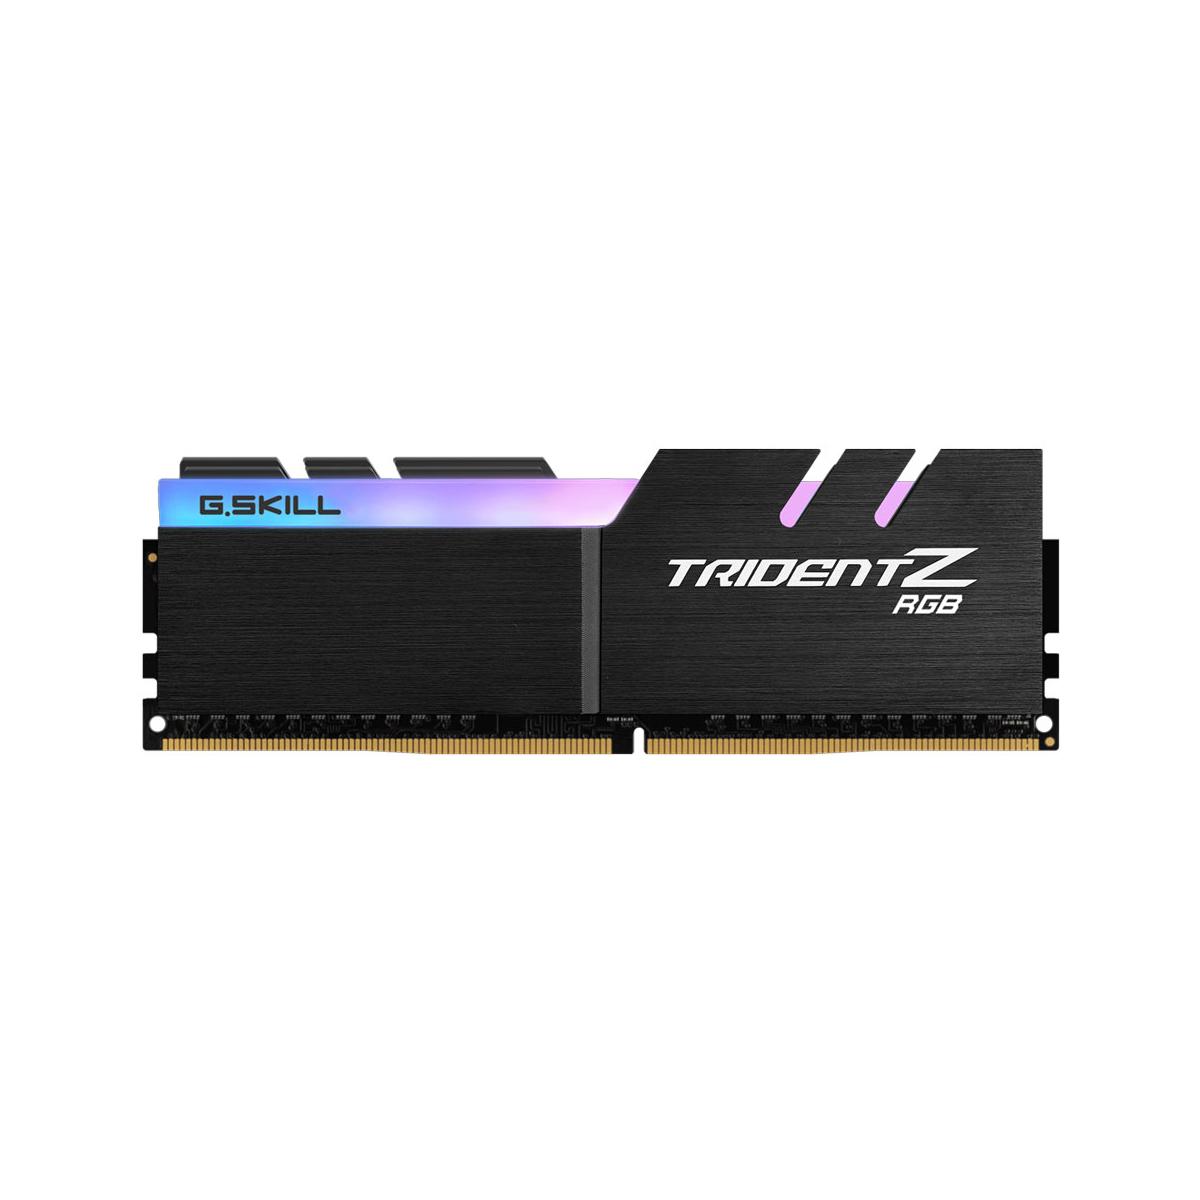 MEMORIA DIMM DDR4 G.SKILL (F4-3000C16S-8GTZR) 8GB(1X8GB) 3000MHZ, TRIDENT Z RGB - GSKILL